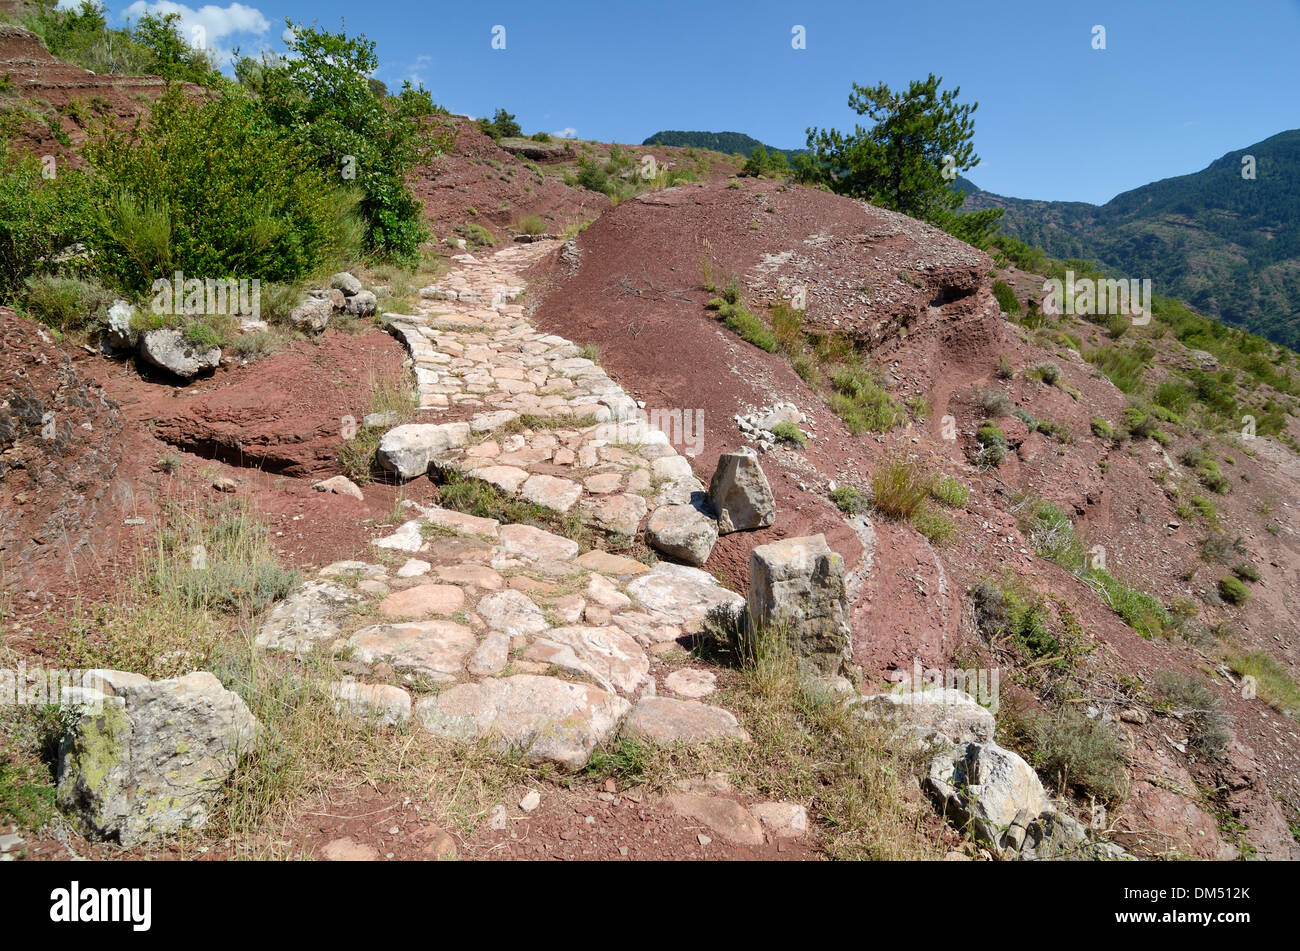 Chemin de pierre dans le cadre d'un sentier de Grande Randonnée ou gorges du Daluis Alpes-Maritimes France Banque D'Images